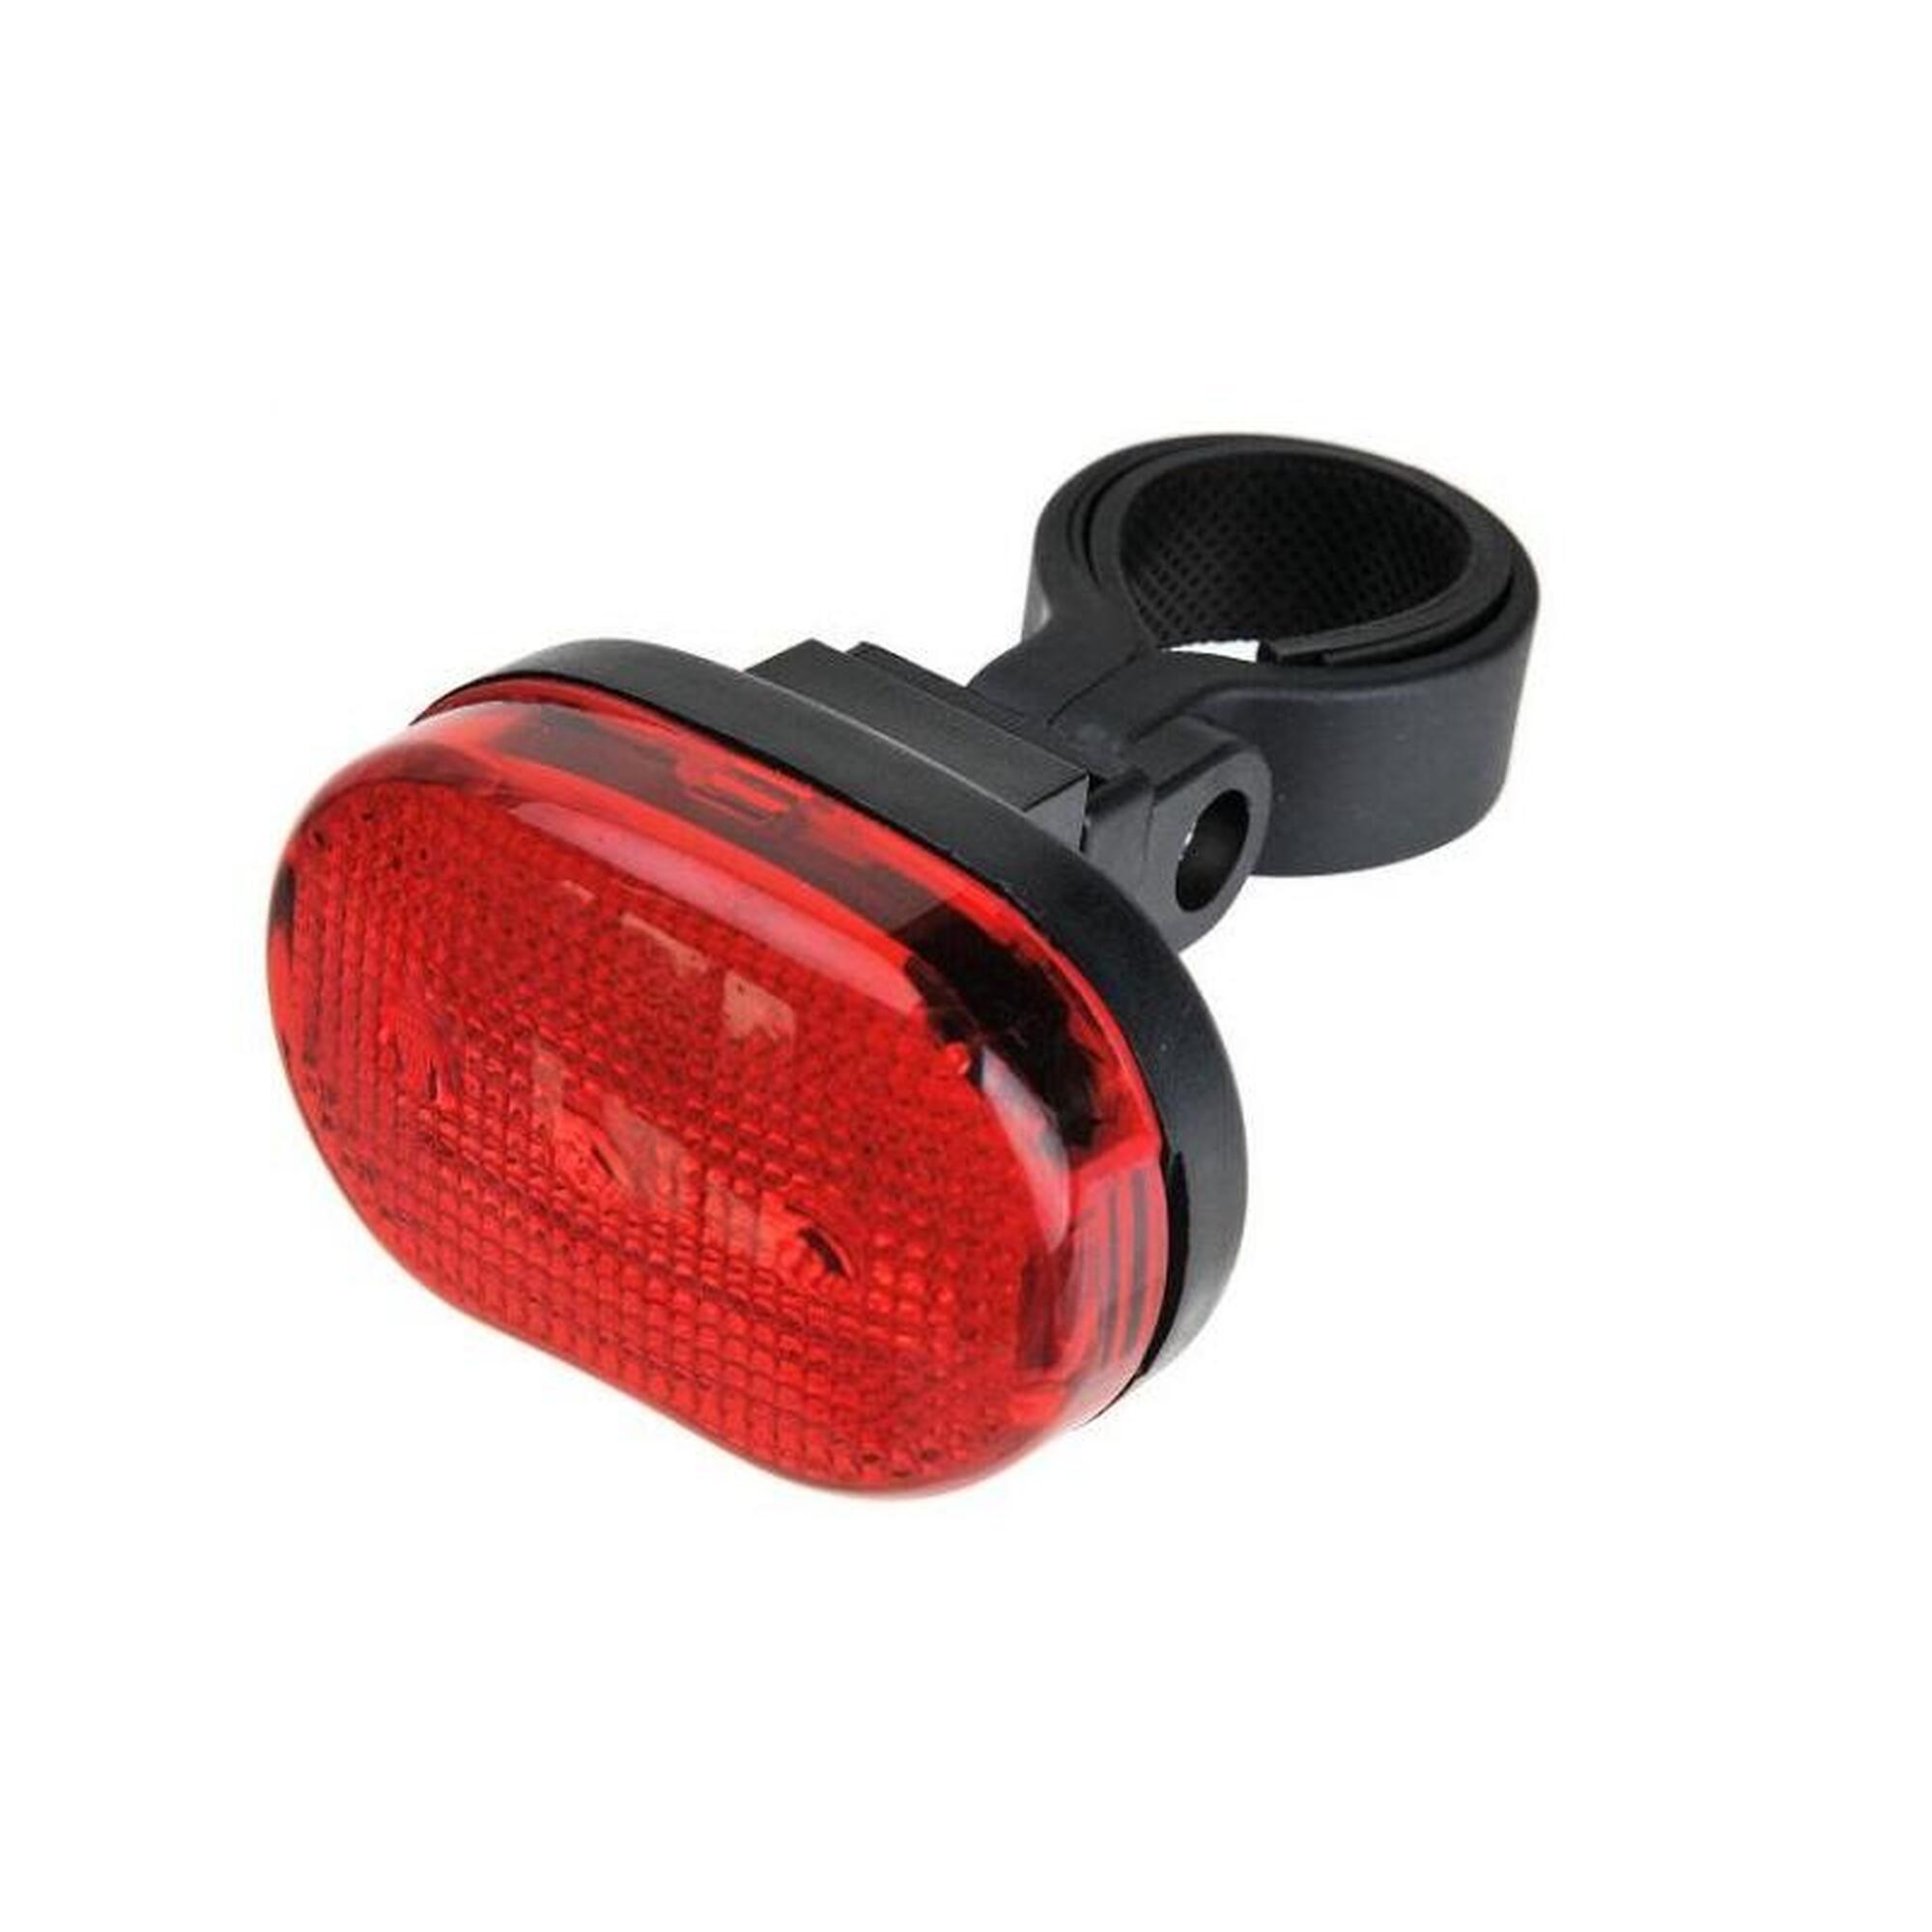 Feu arrière LED pour vélo - 3 Diodes - Feu arrière rouge pour vélo